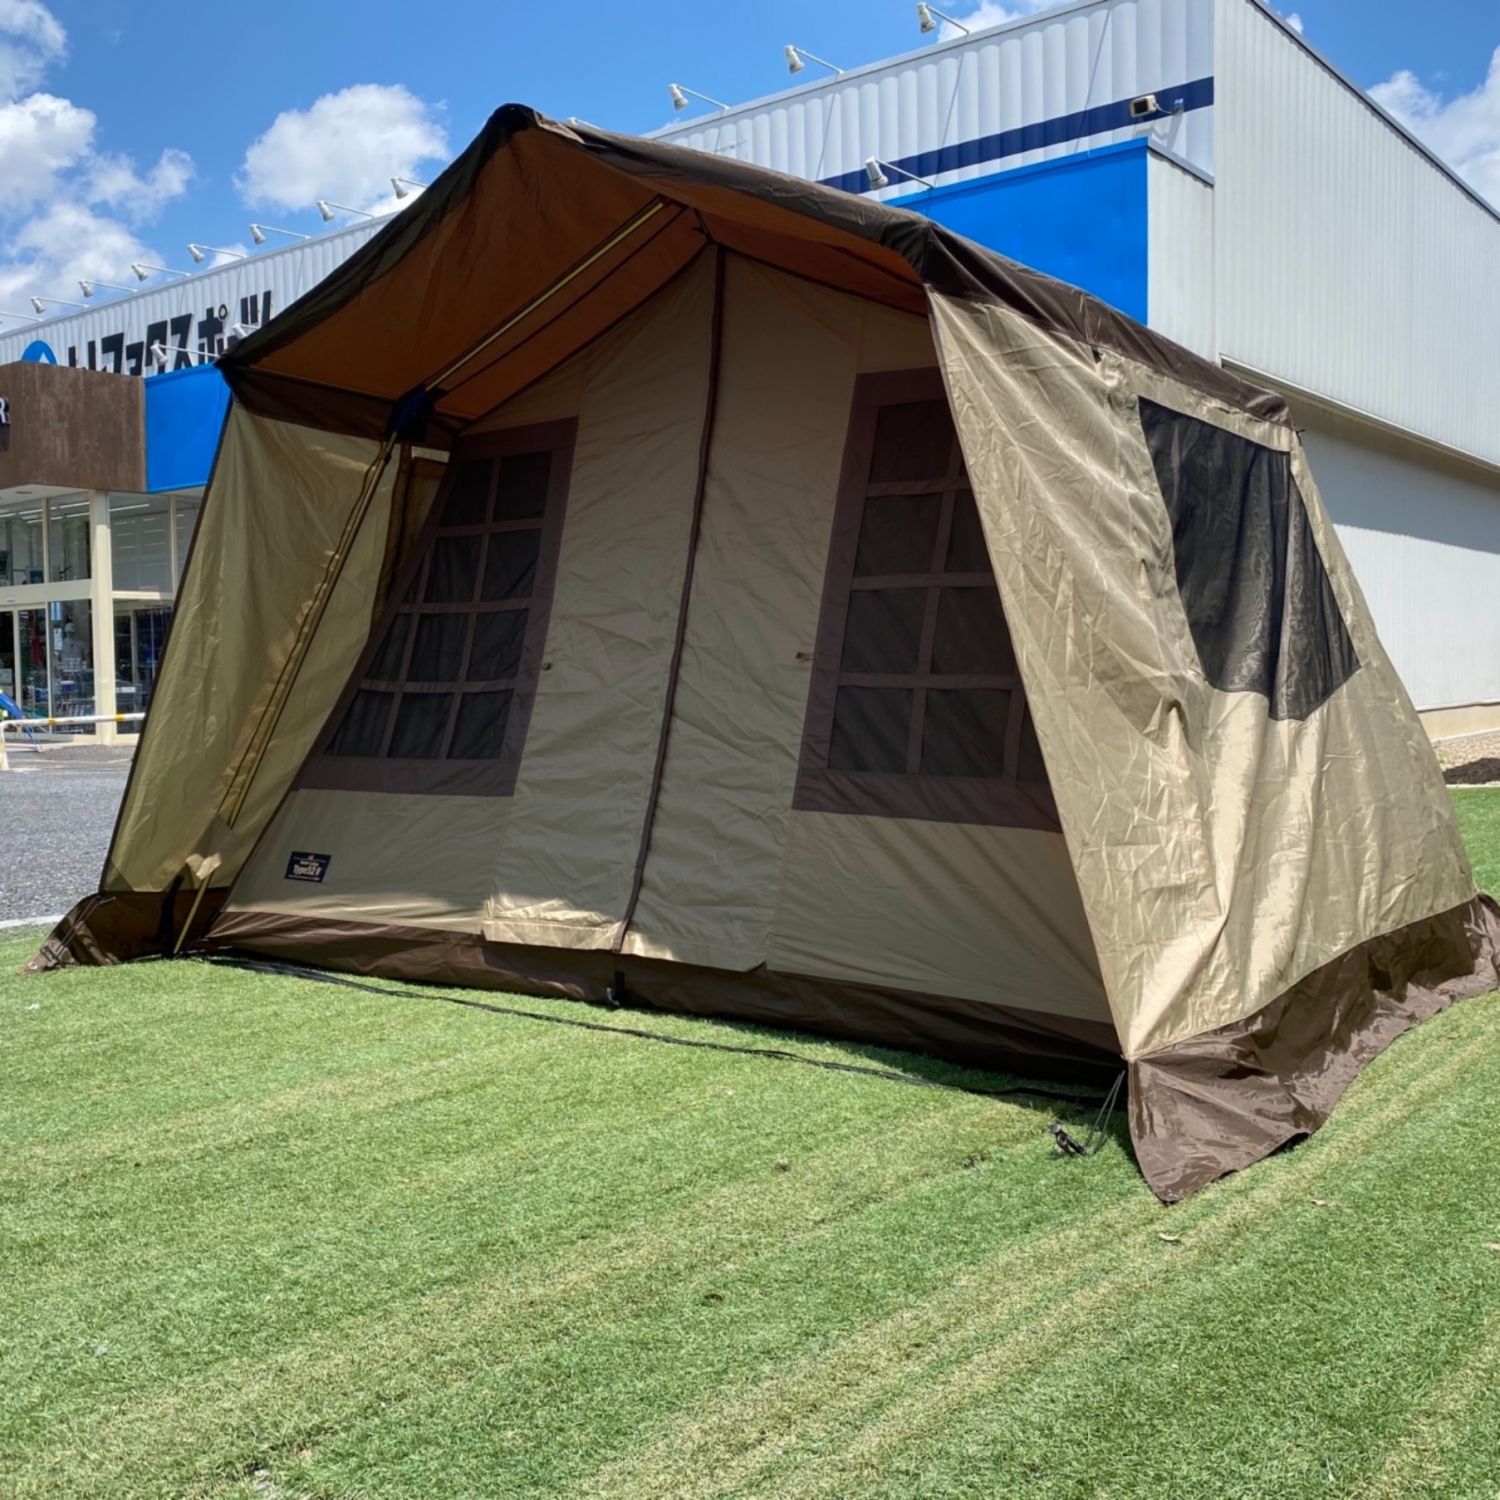 ogawa(オガワ) アウトドア キャンプ テント ロッジ型 オーナーロッジ タイプ52R 5人用